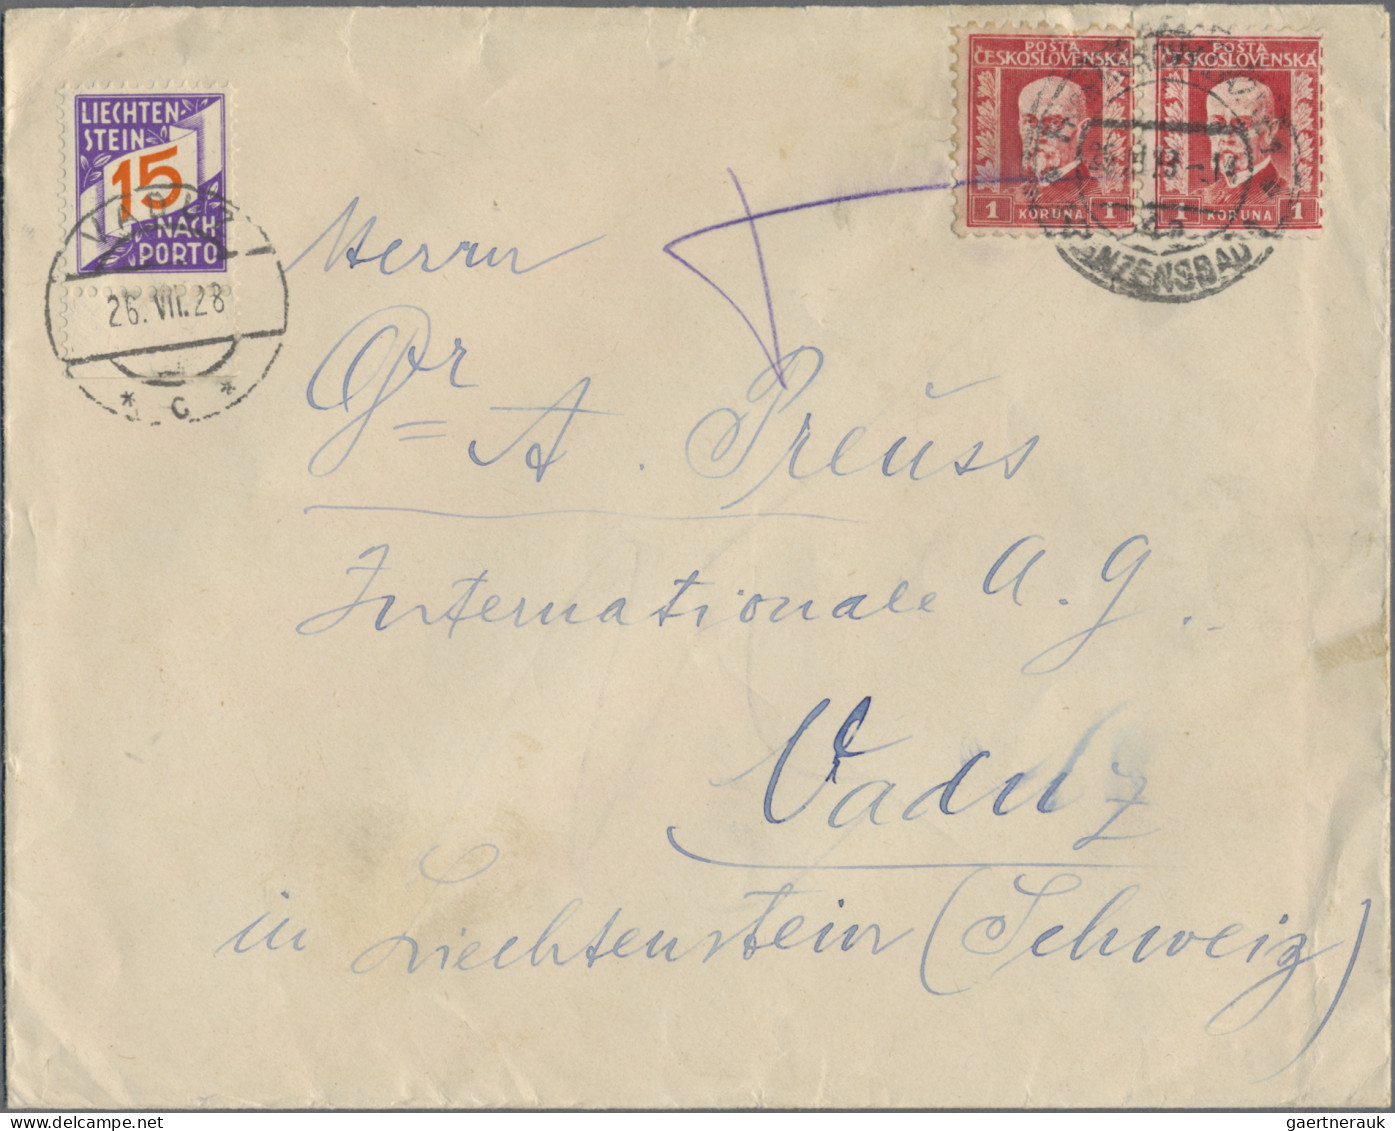 Liechtenstein: 1912/1960, Posten mit 80 Briefen und Karten mit teils interessant